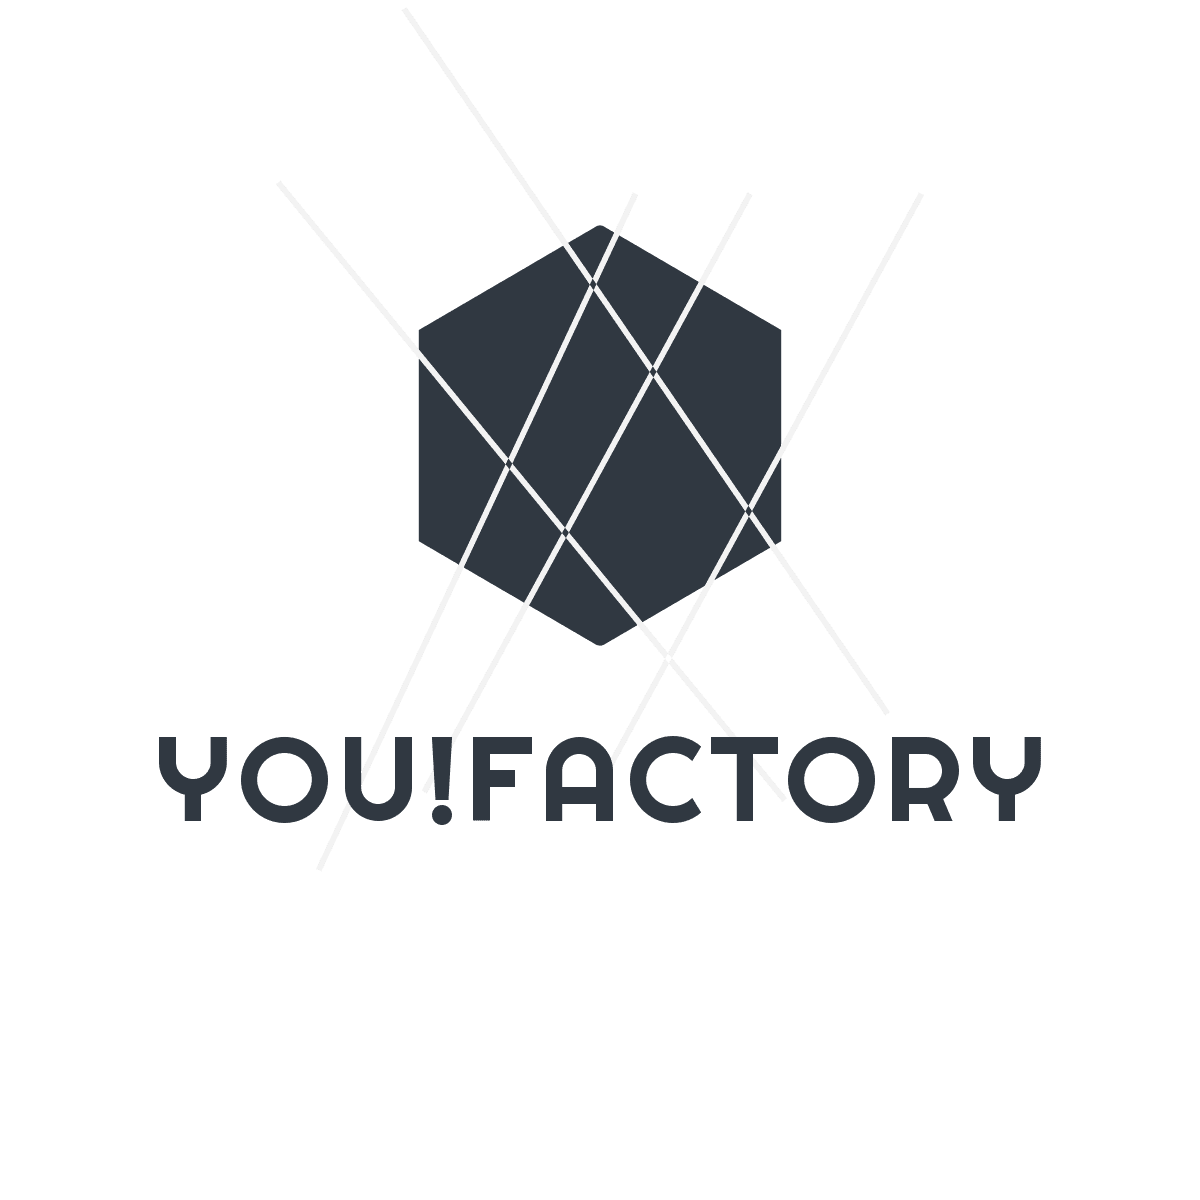 YouFactory